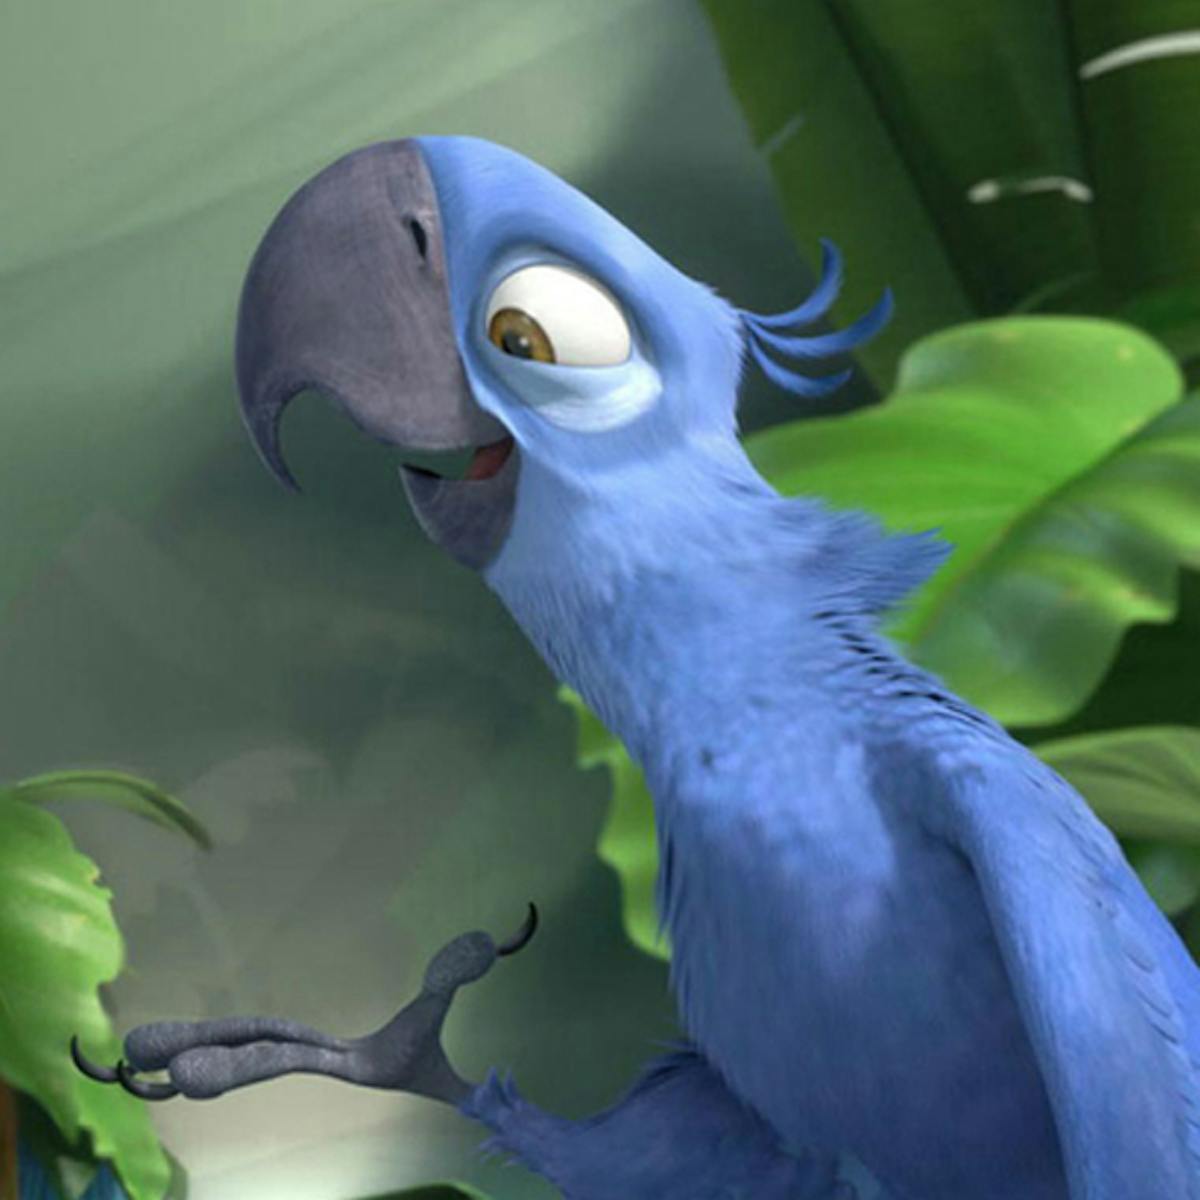 Le perroquet bleu du dessin animé Rio est officiellement une ...